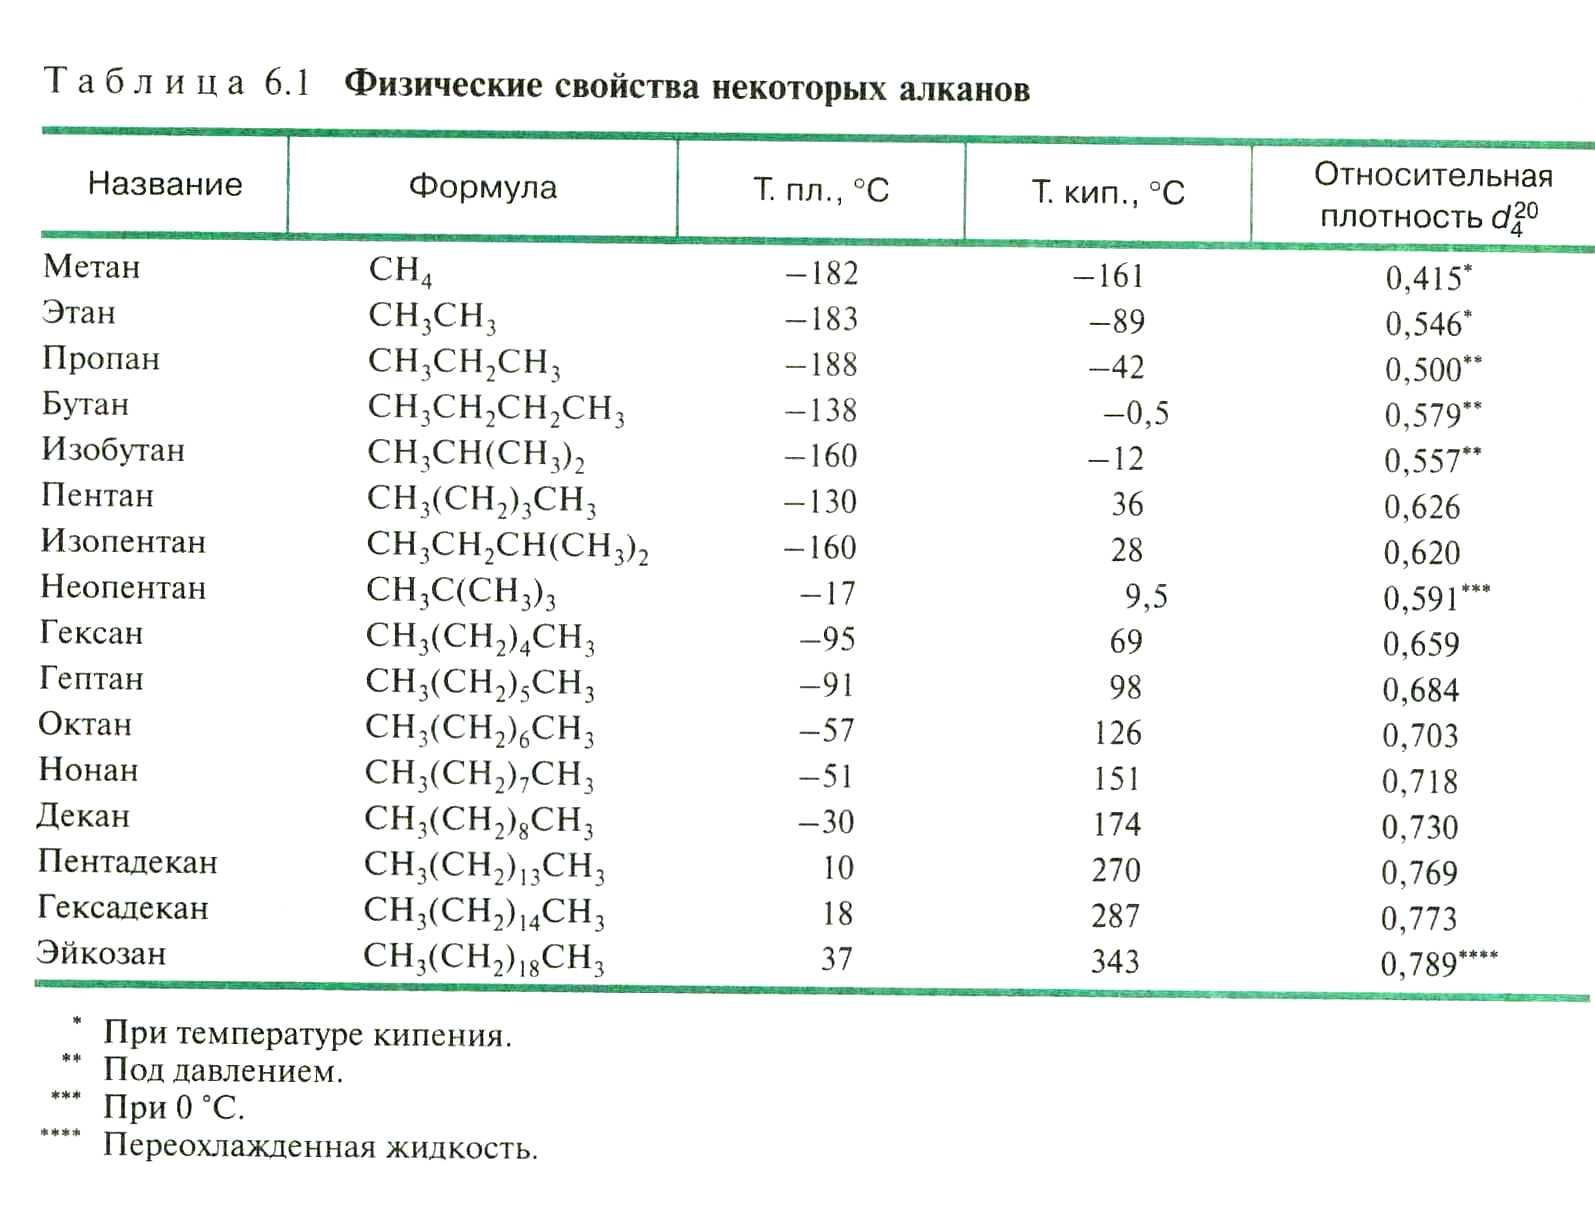 Нормальная плотность метана. Температура кипения алканов таблица. Циклоалканы Гомологический ряд таблица. Плотность алканов таблица. Таблица газов углеводородов.